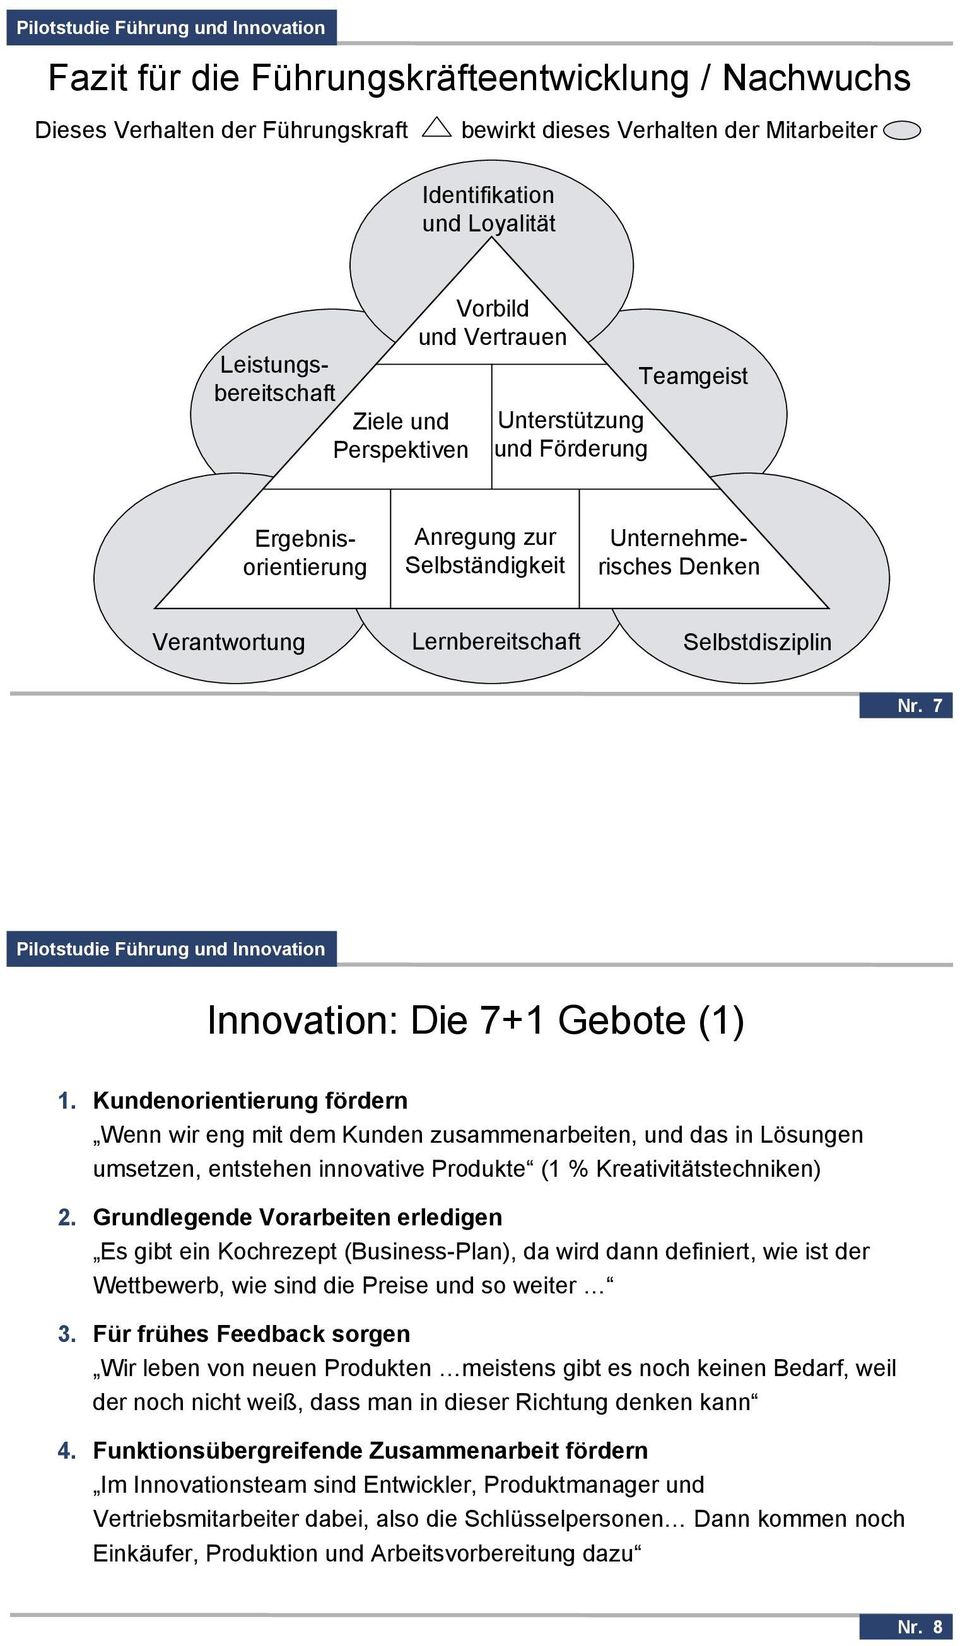 7 Innovation: Die 7+1 Gebote (1) 1. Kundenorientierung fördern Wenn wir eng mit dem Kunden zusammenarbeiten, und das in Lösungen umsetzen, entstehen innovative Produkte (1 % Kreativitätstechniken) 2.